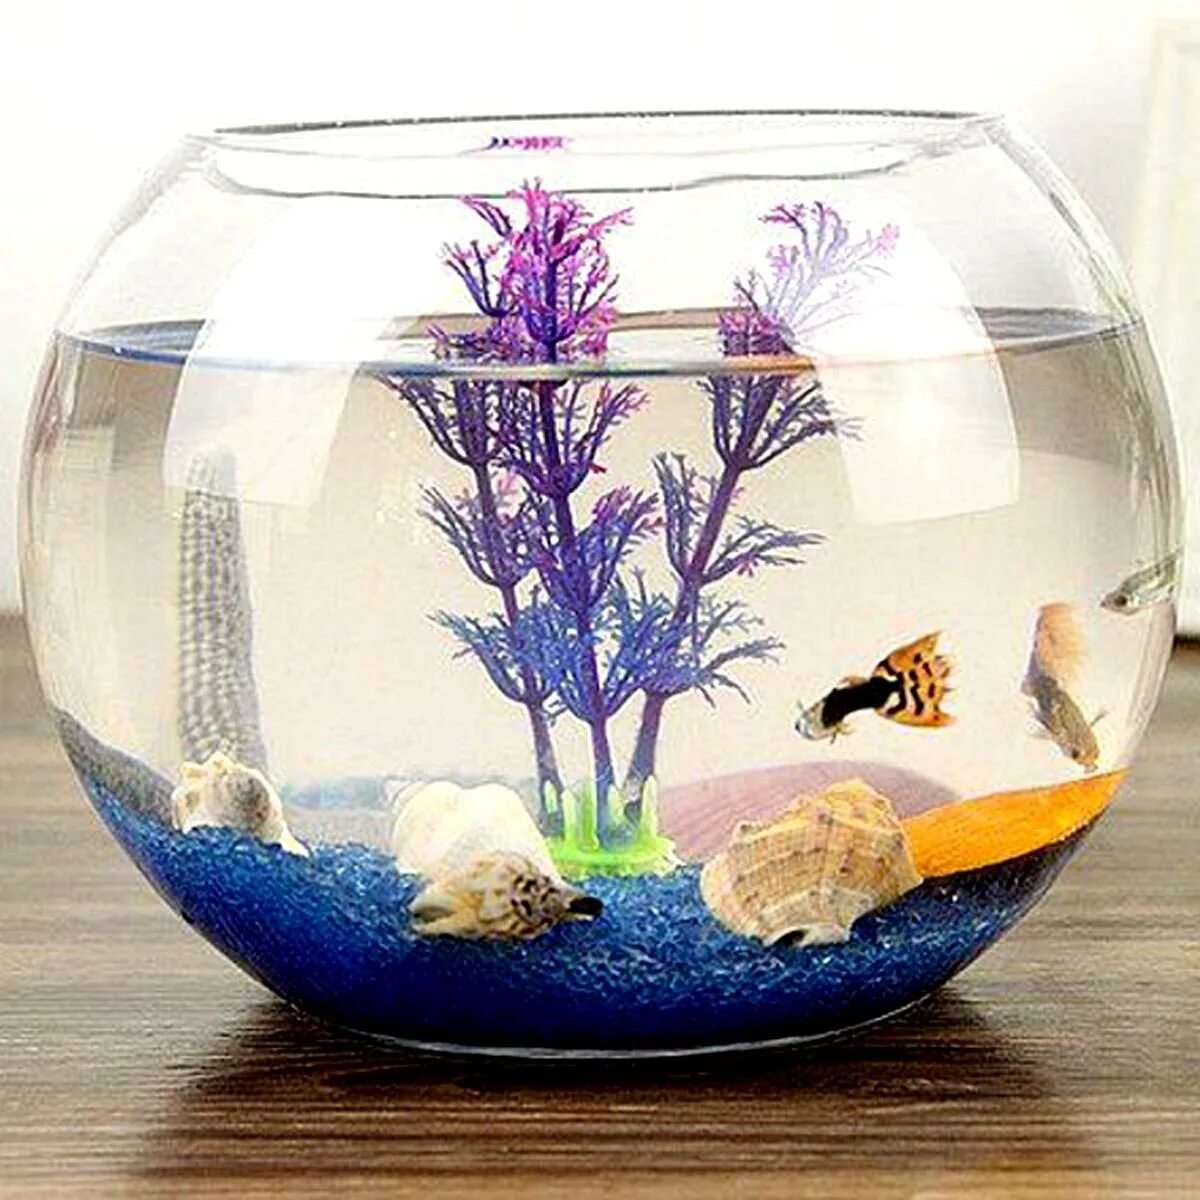 Аквариумные рыбки без фильтра. Аквариум (Fish Tank) 2009. Аквариум маленький круглый. Маленький круглый аквариум для рыбок. Круглый аквариум с рыбками.